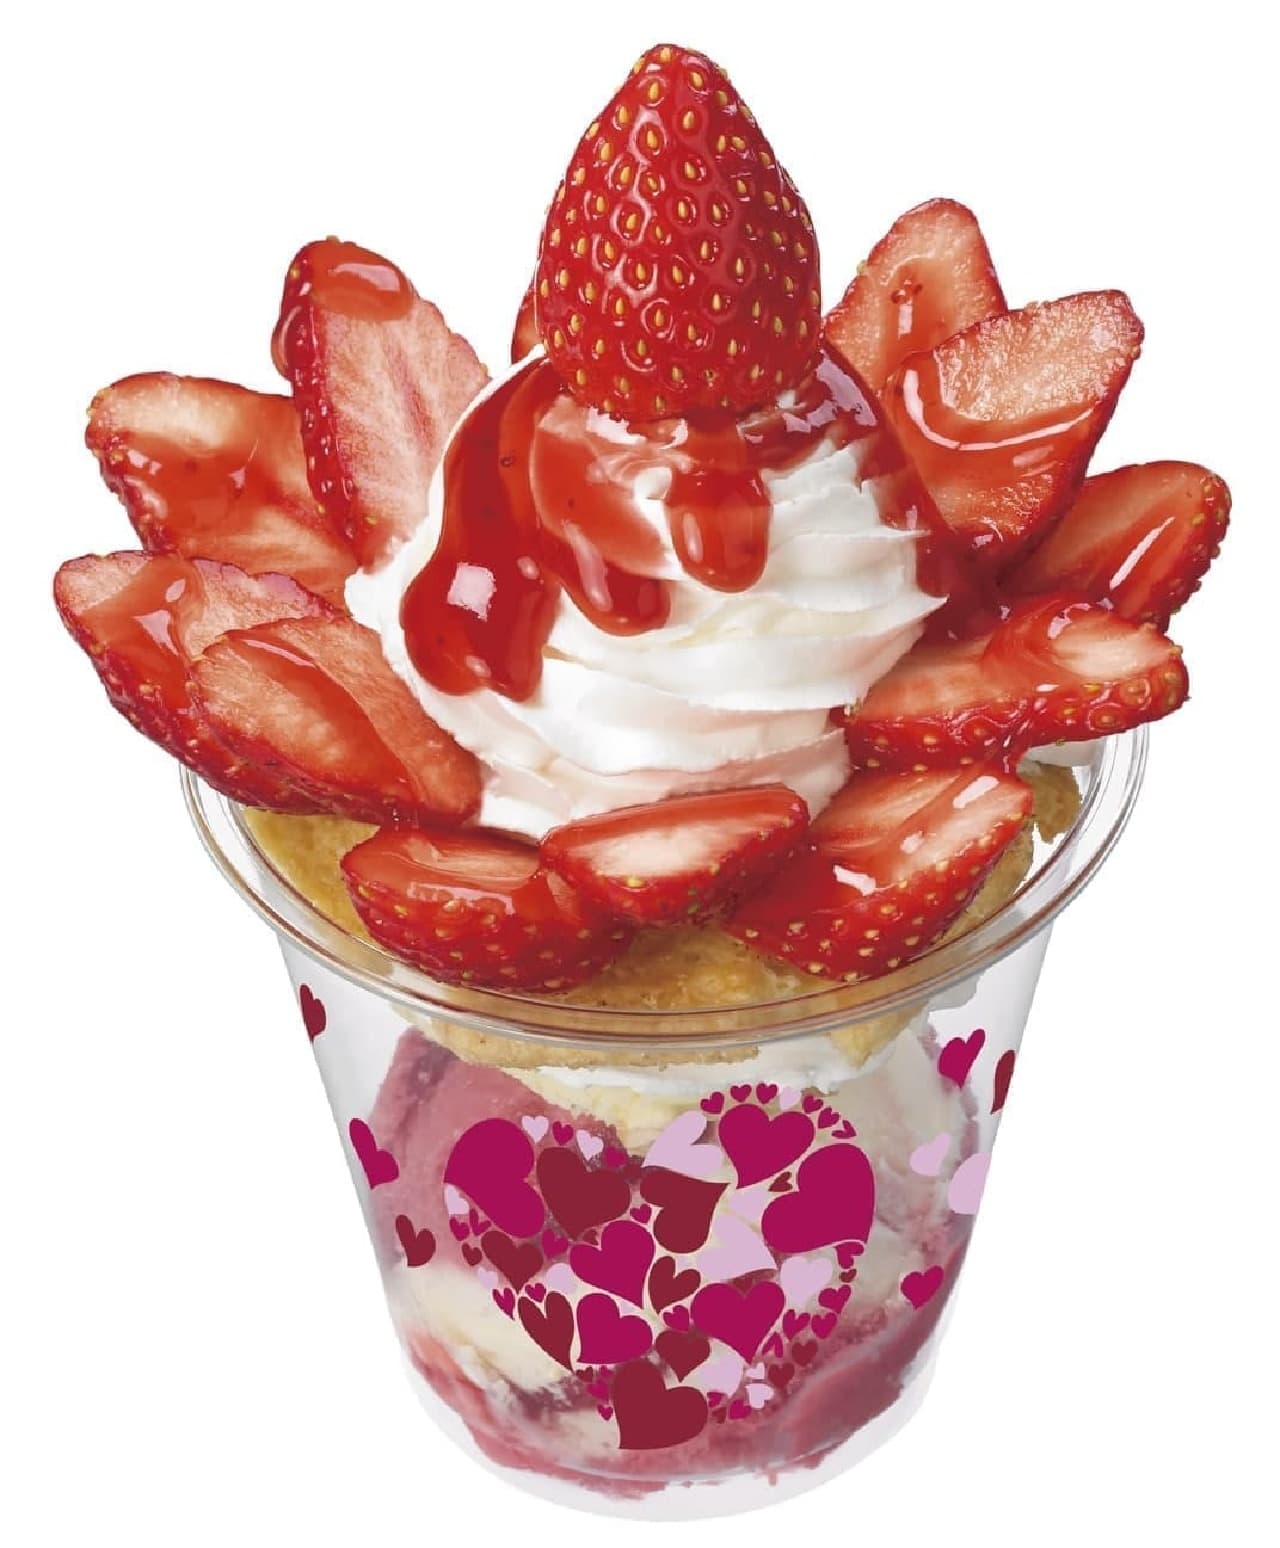 Thirty One Ice Cream "Premium Strawberry"